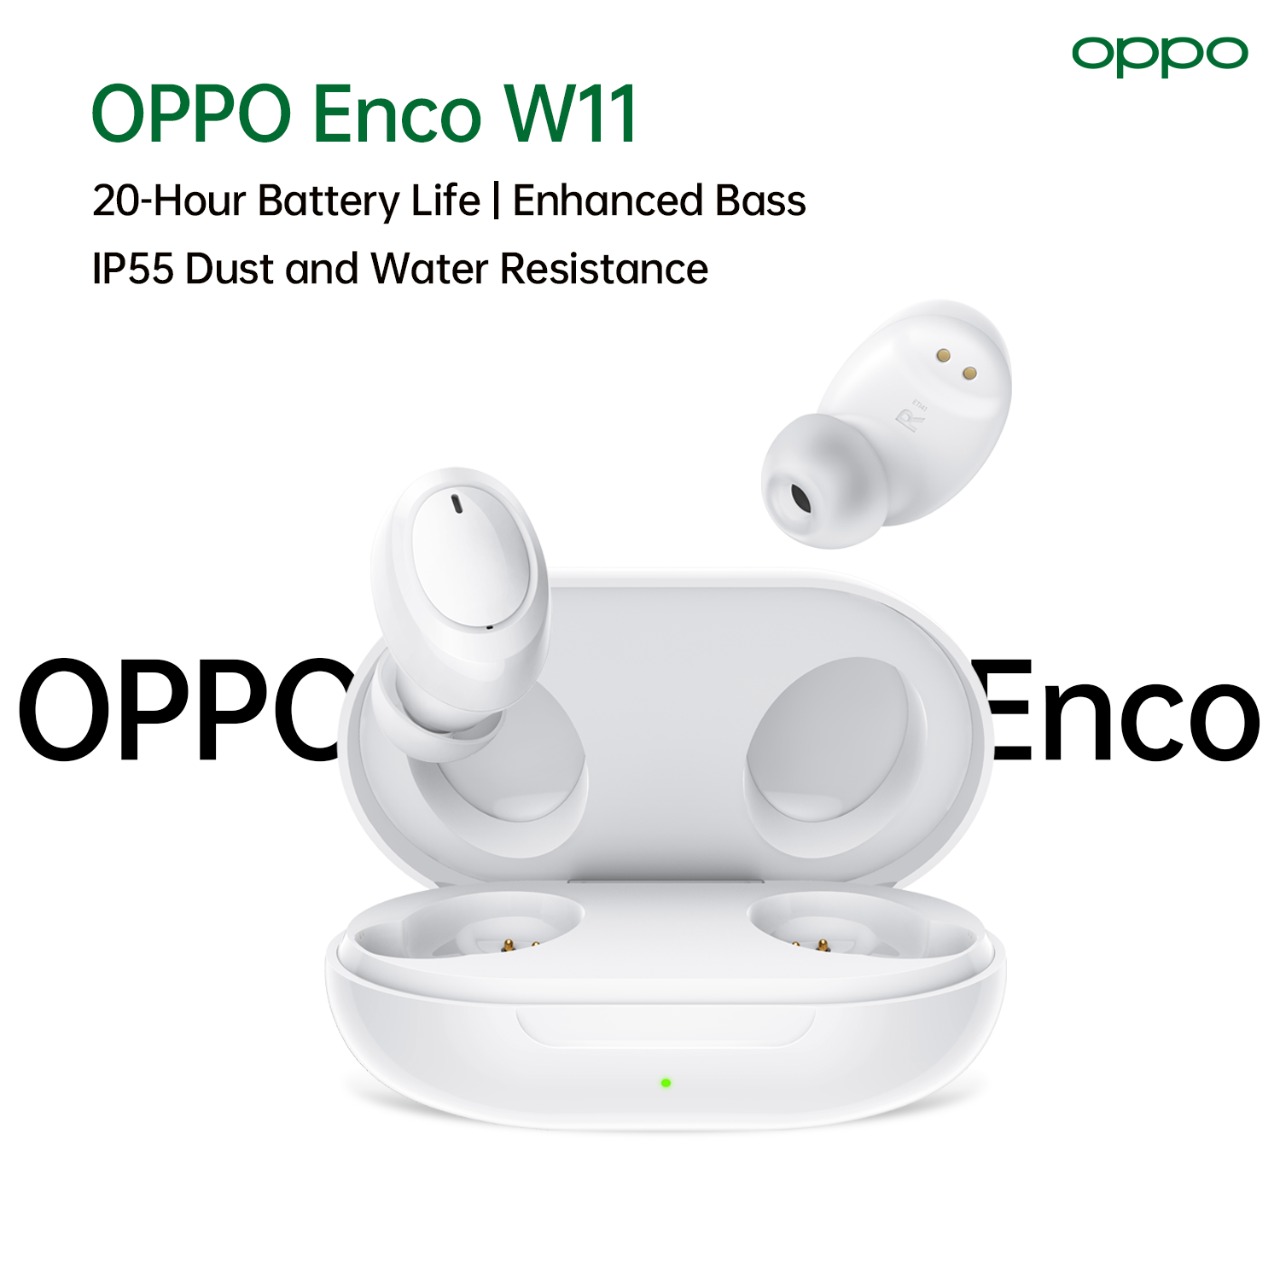 سماعات OPPO Enco W11 اللاسلكية: أفضل سماعات لاسلكية بأقل من [50 دينار]